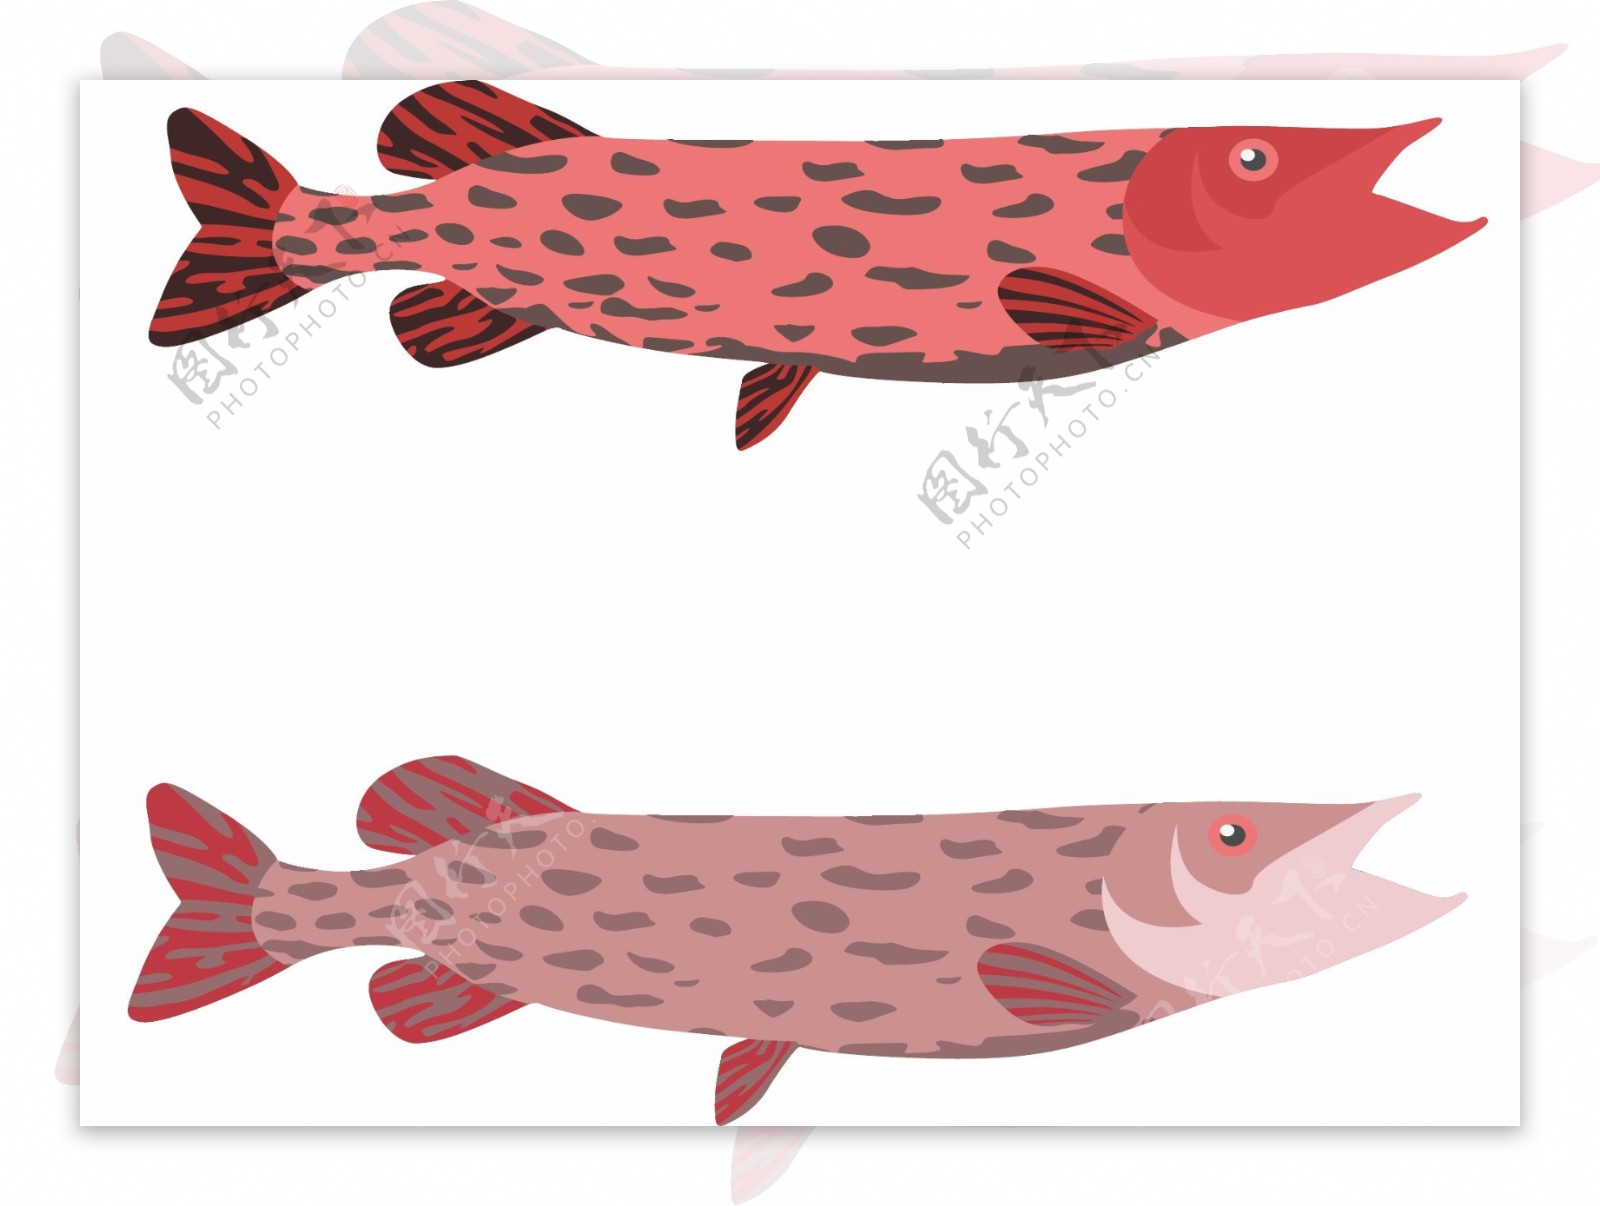 动物图案鱼造型元素